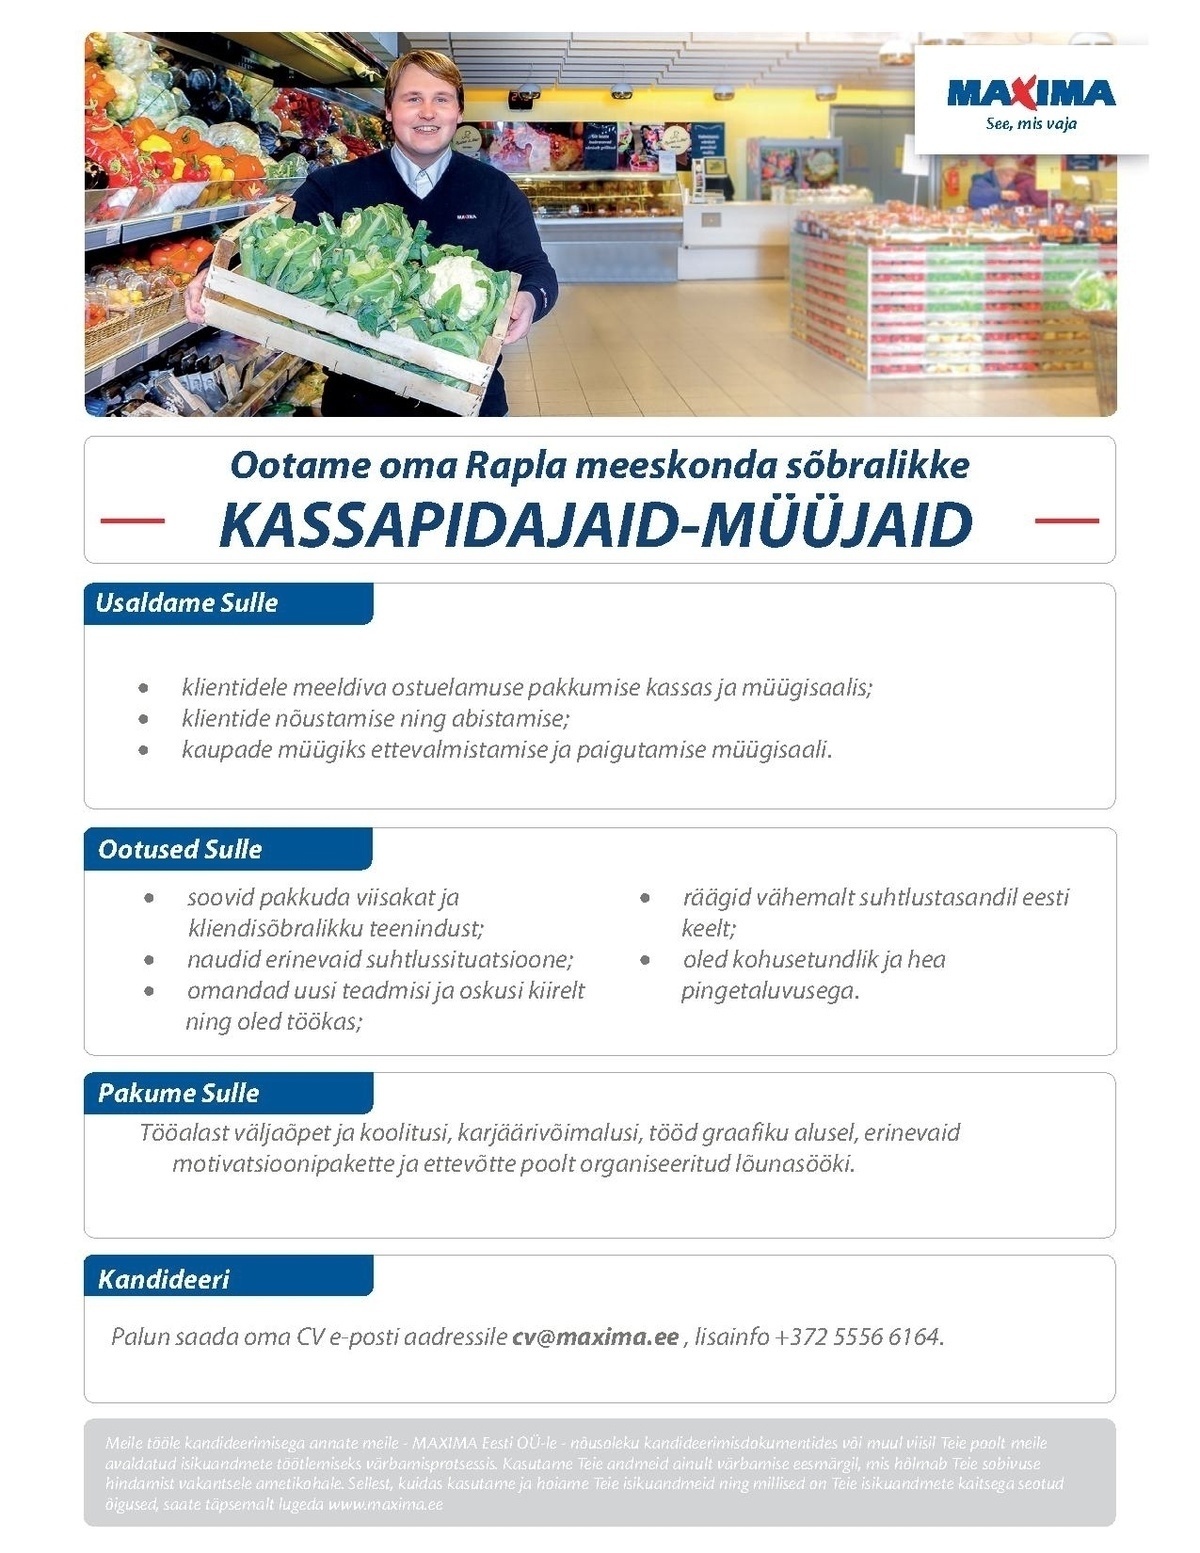 Maxima Eesti OÜ Kassapidaja- müüja Pärnu Maximas